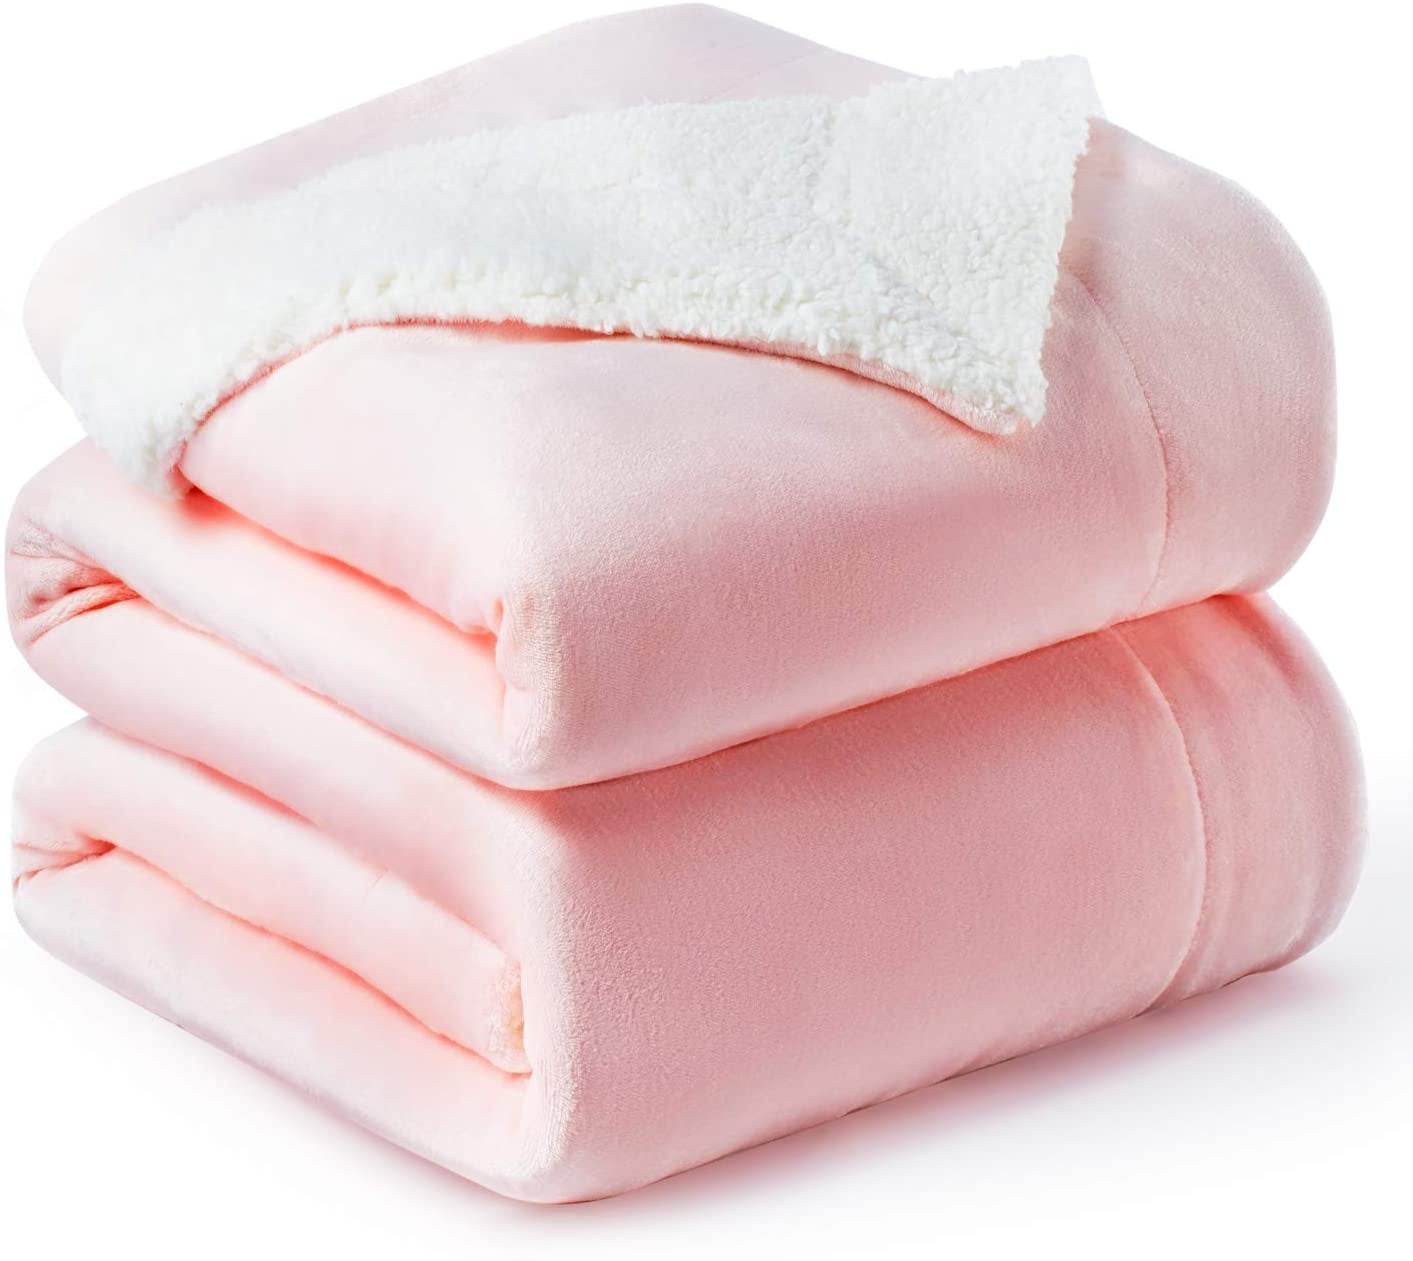 Golden Home Sherpa Fleece Blanket Queen Size Pink Plush Throw Blanket Fuzzy Soft Blanket Microfiber Walmartcom Walmartcom